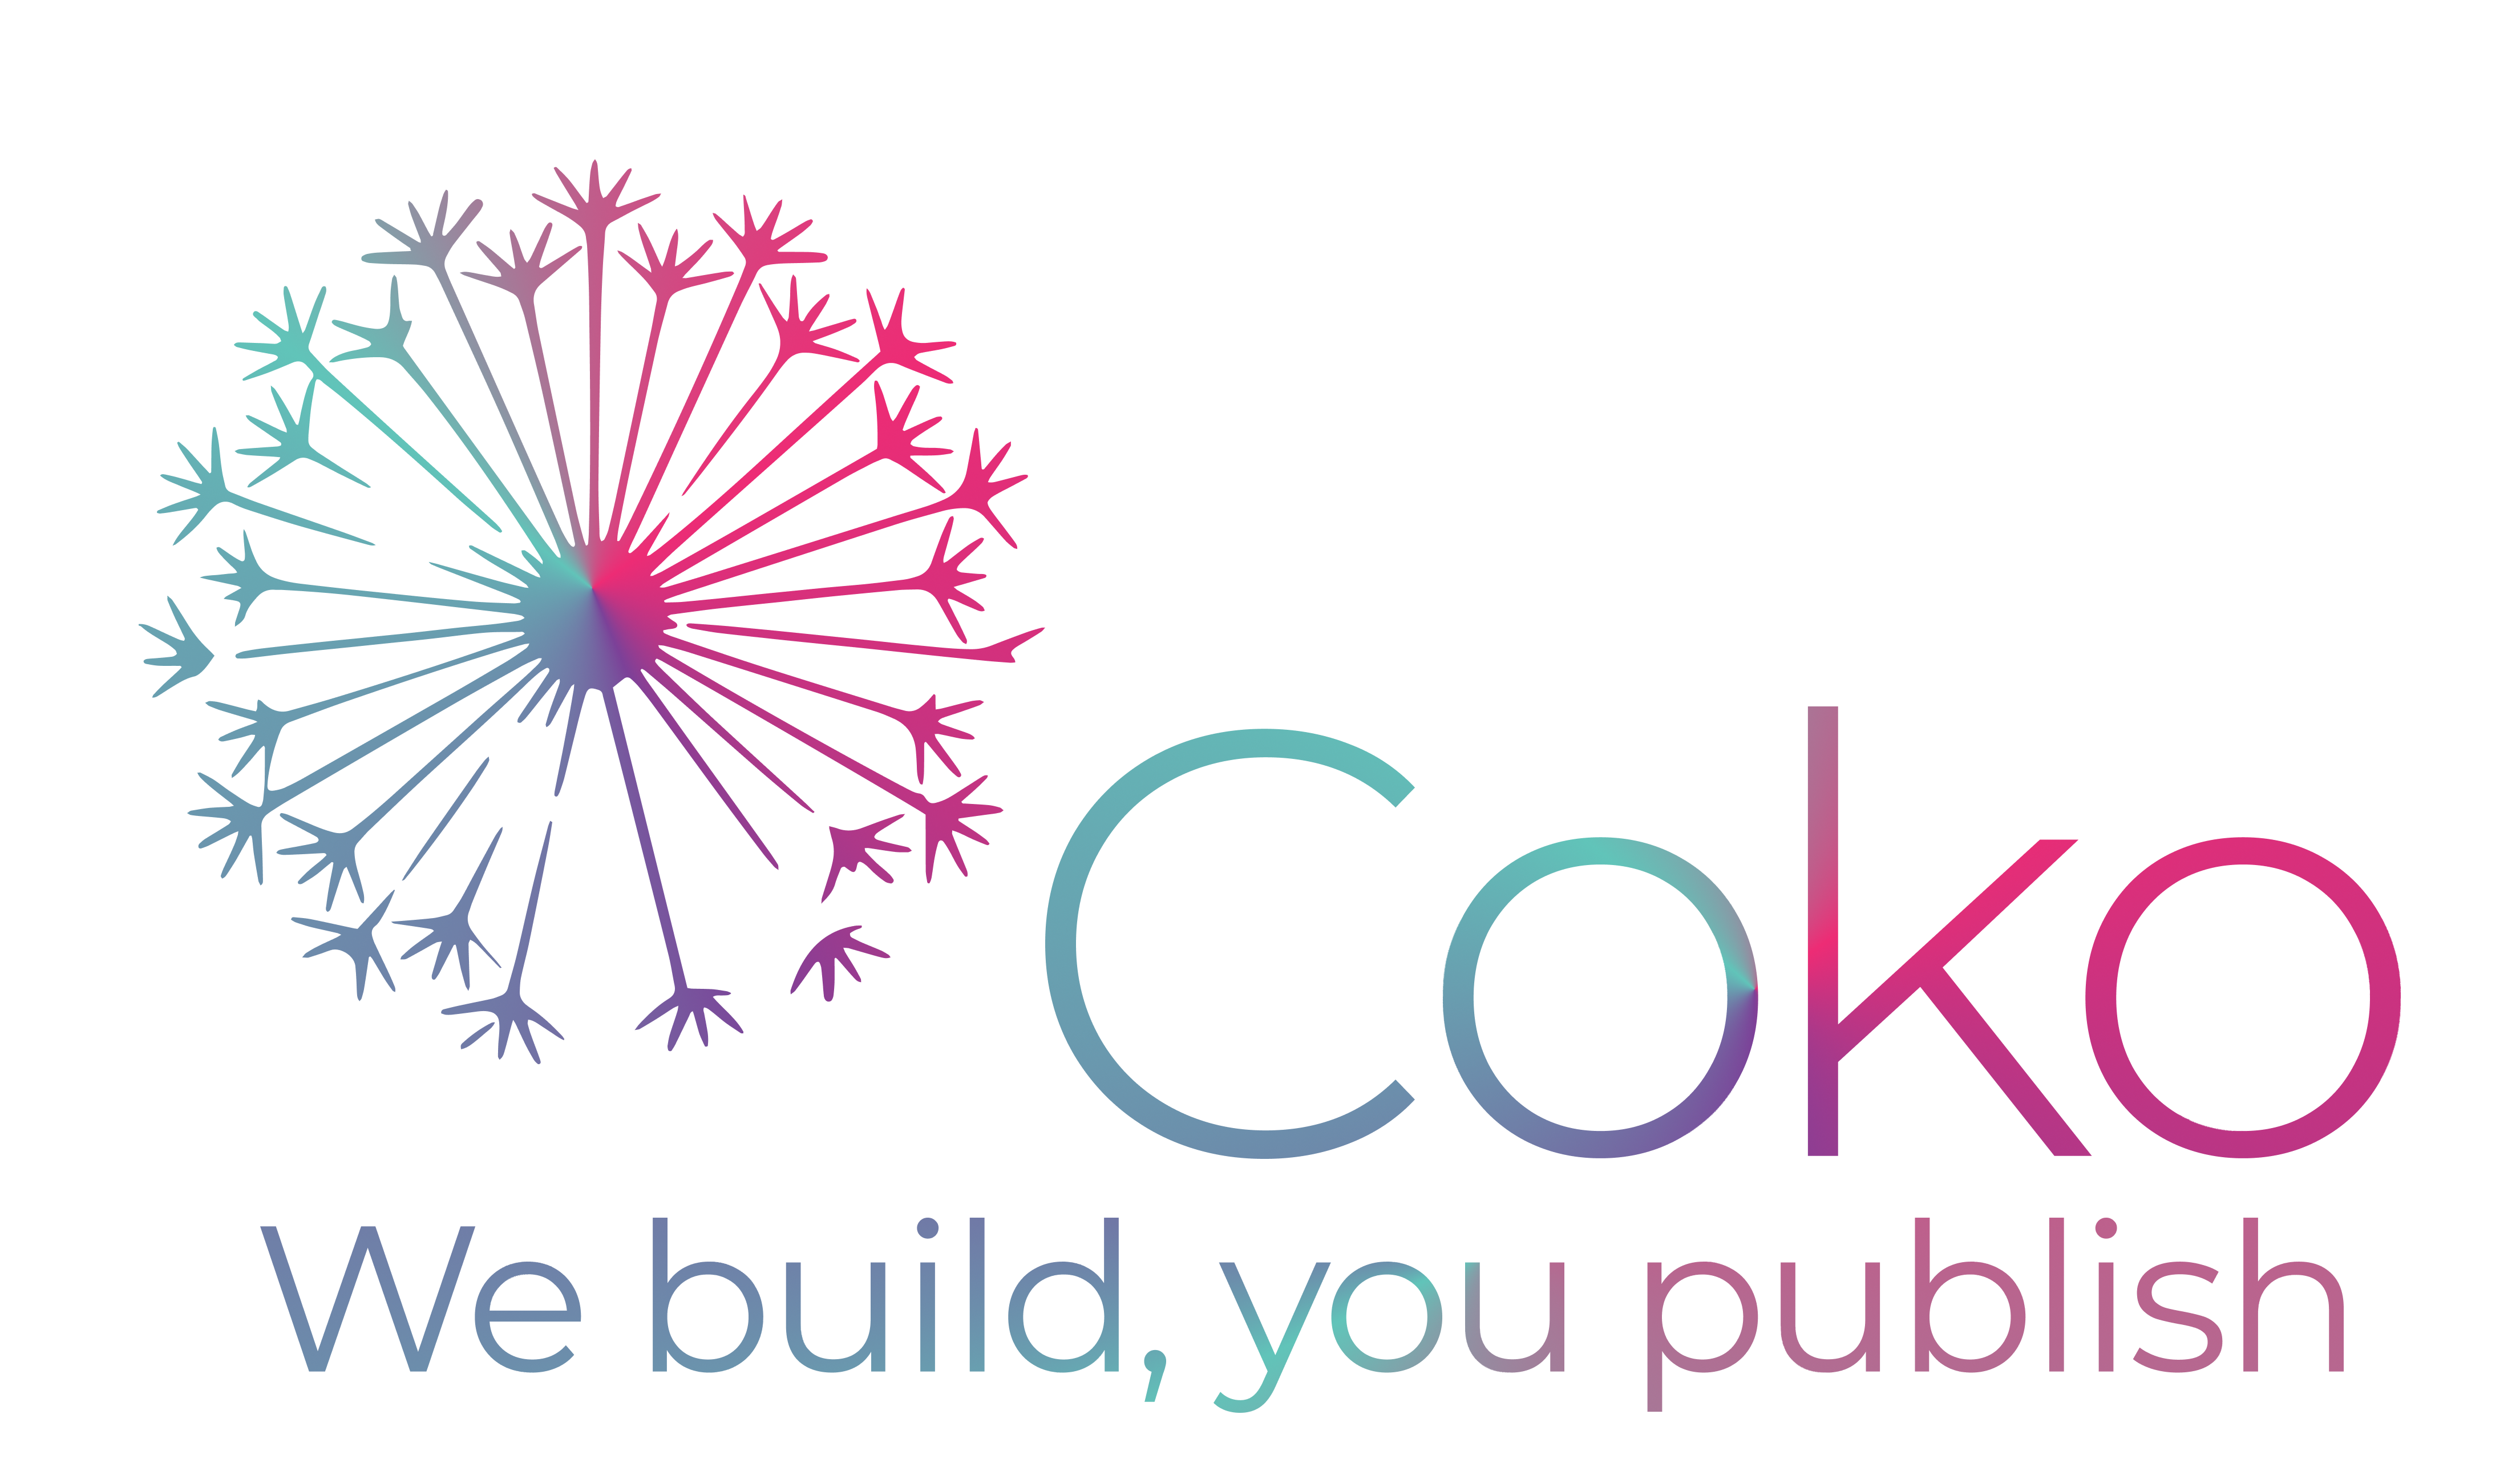 Coko’s logo